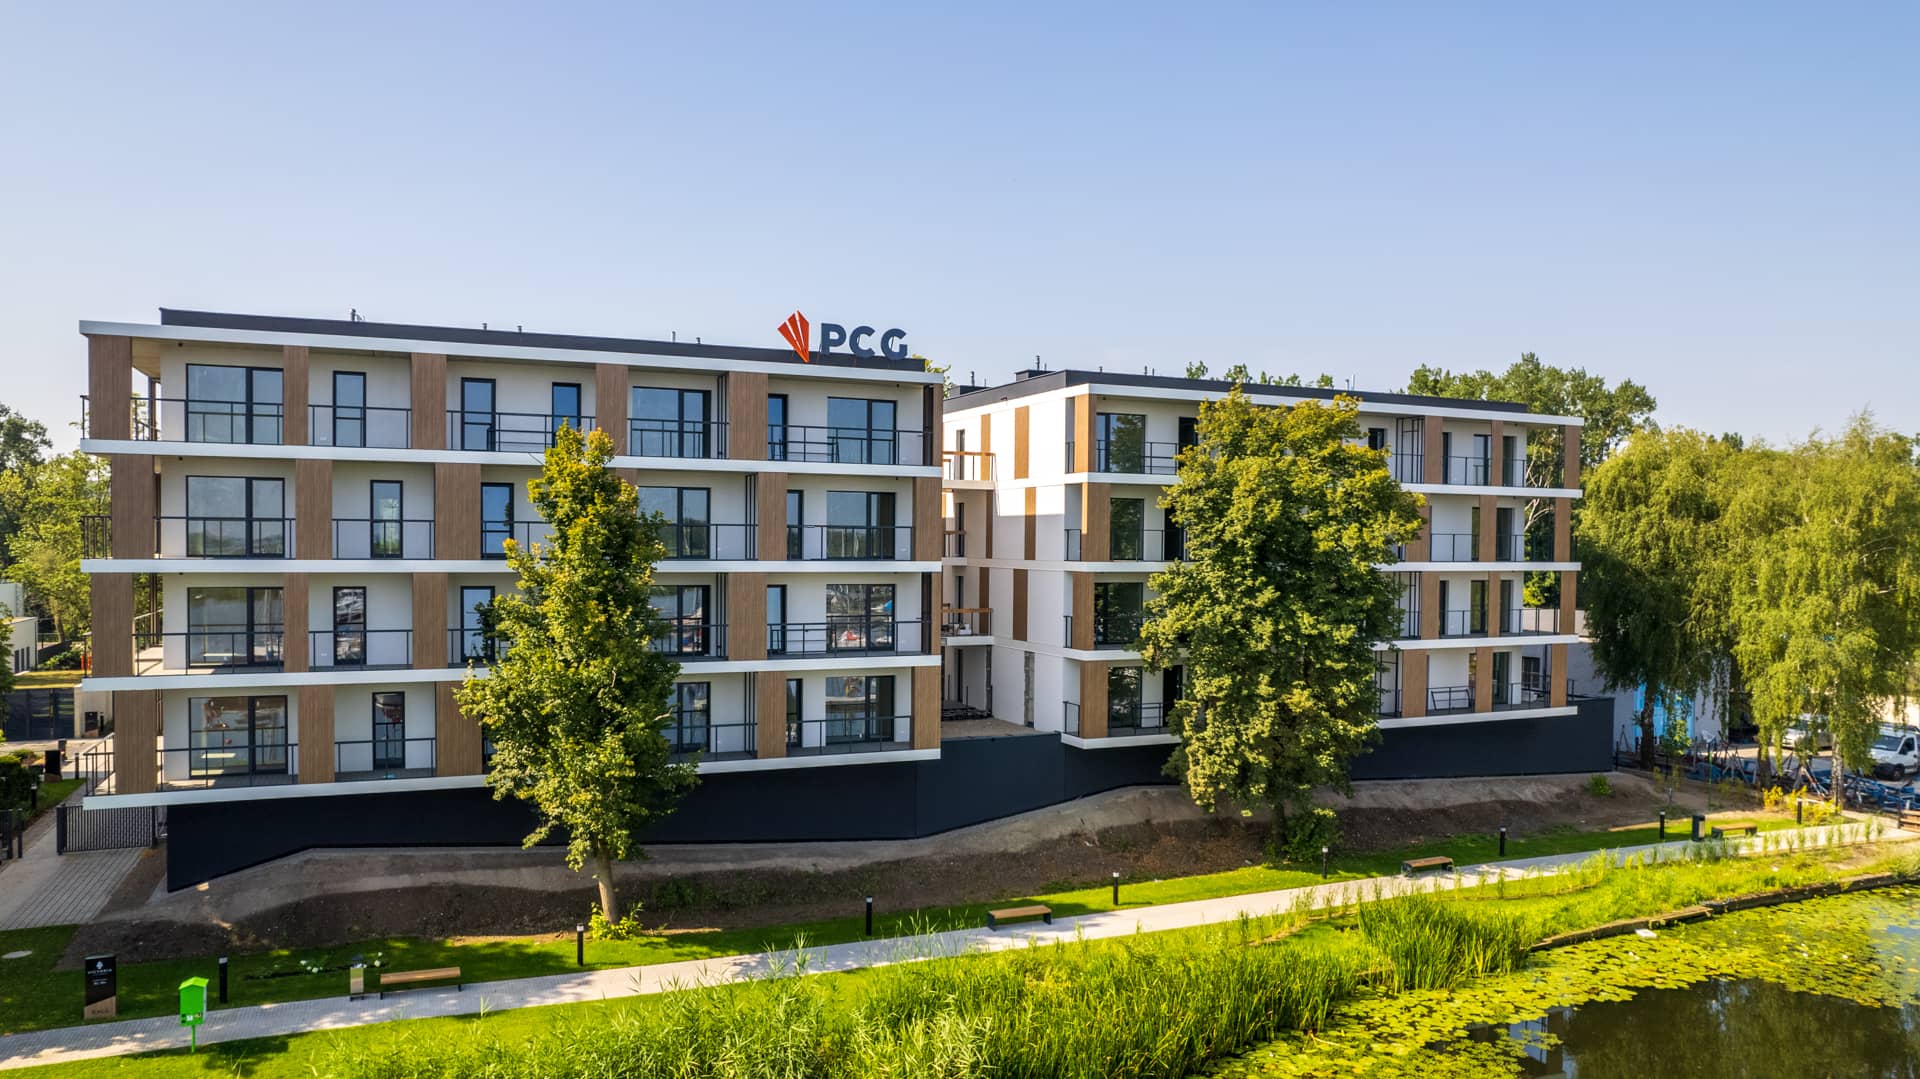 Victoria, Dziennik budowy - Victoria Apartments w Szczecinie - czerwiec 2022